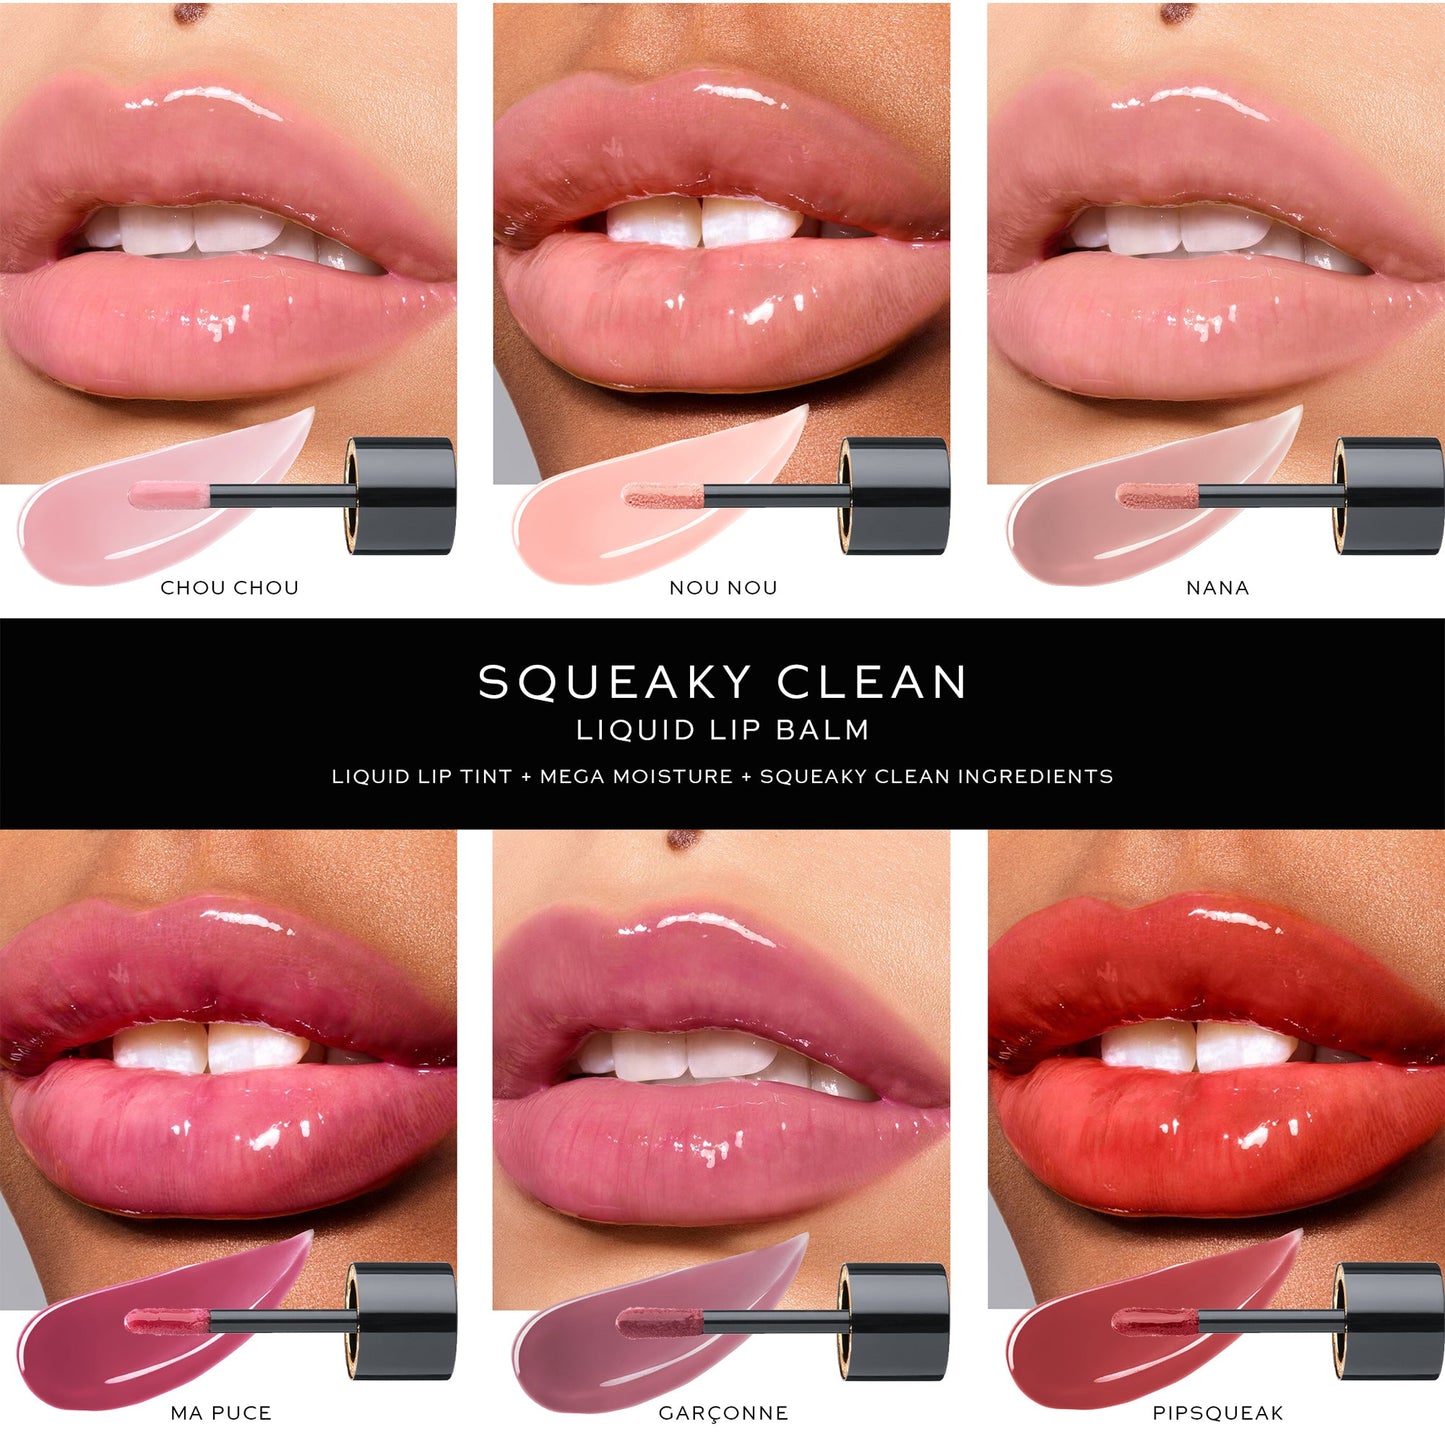 Squeaky Clean Lip Balm - Nana